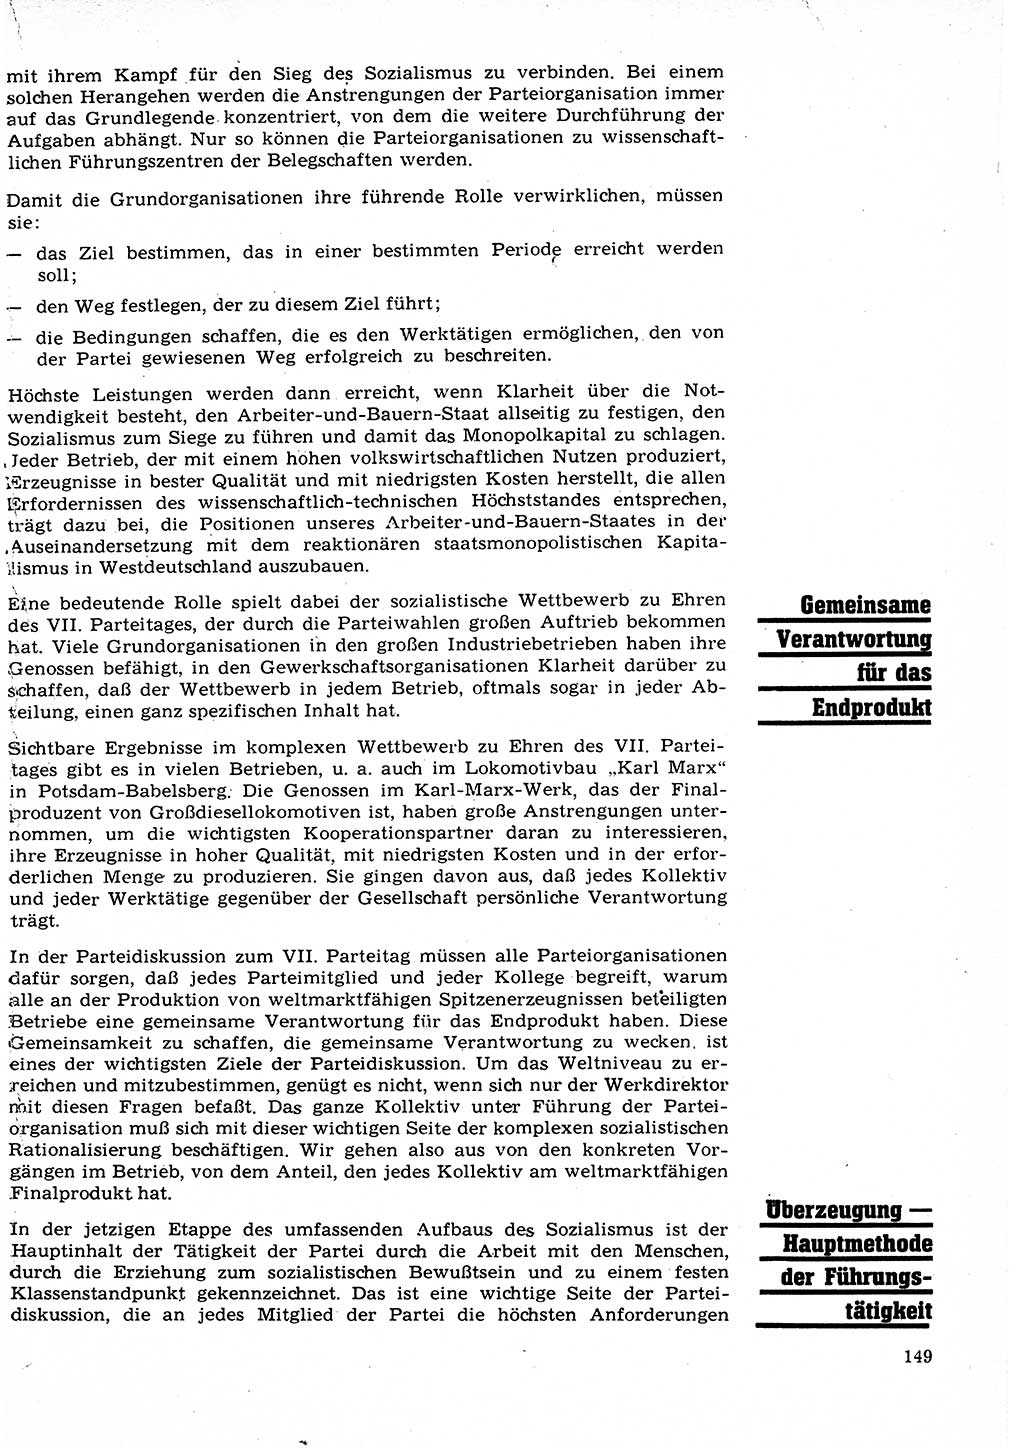 Neuer Weg (NW), Organ des Zentralkomitees (ZK) der SED (Sozialistische Einheitspartei Deutschlands) für Fragen des Parteilebens, 22. Jahrgang [Deutsche Demokratische Republik (DDR)] 1967, Seite 149 (NW ZK SED DDR 1967, S. 149)